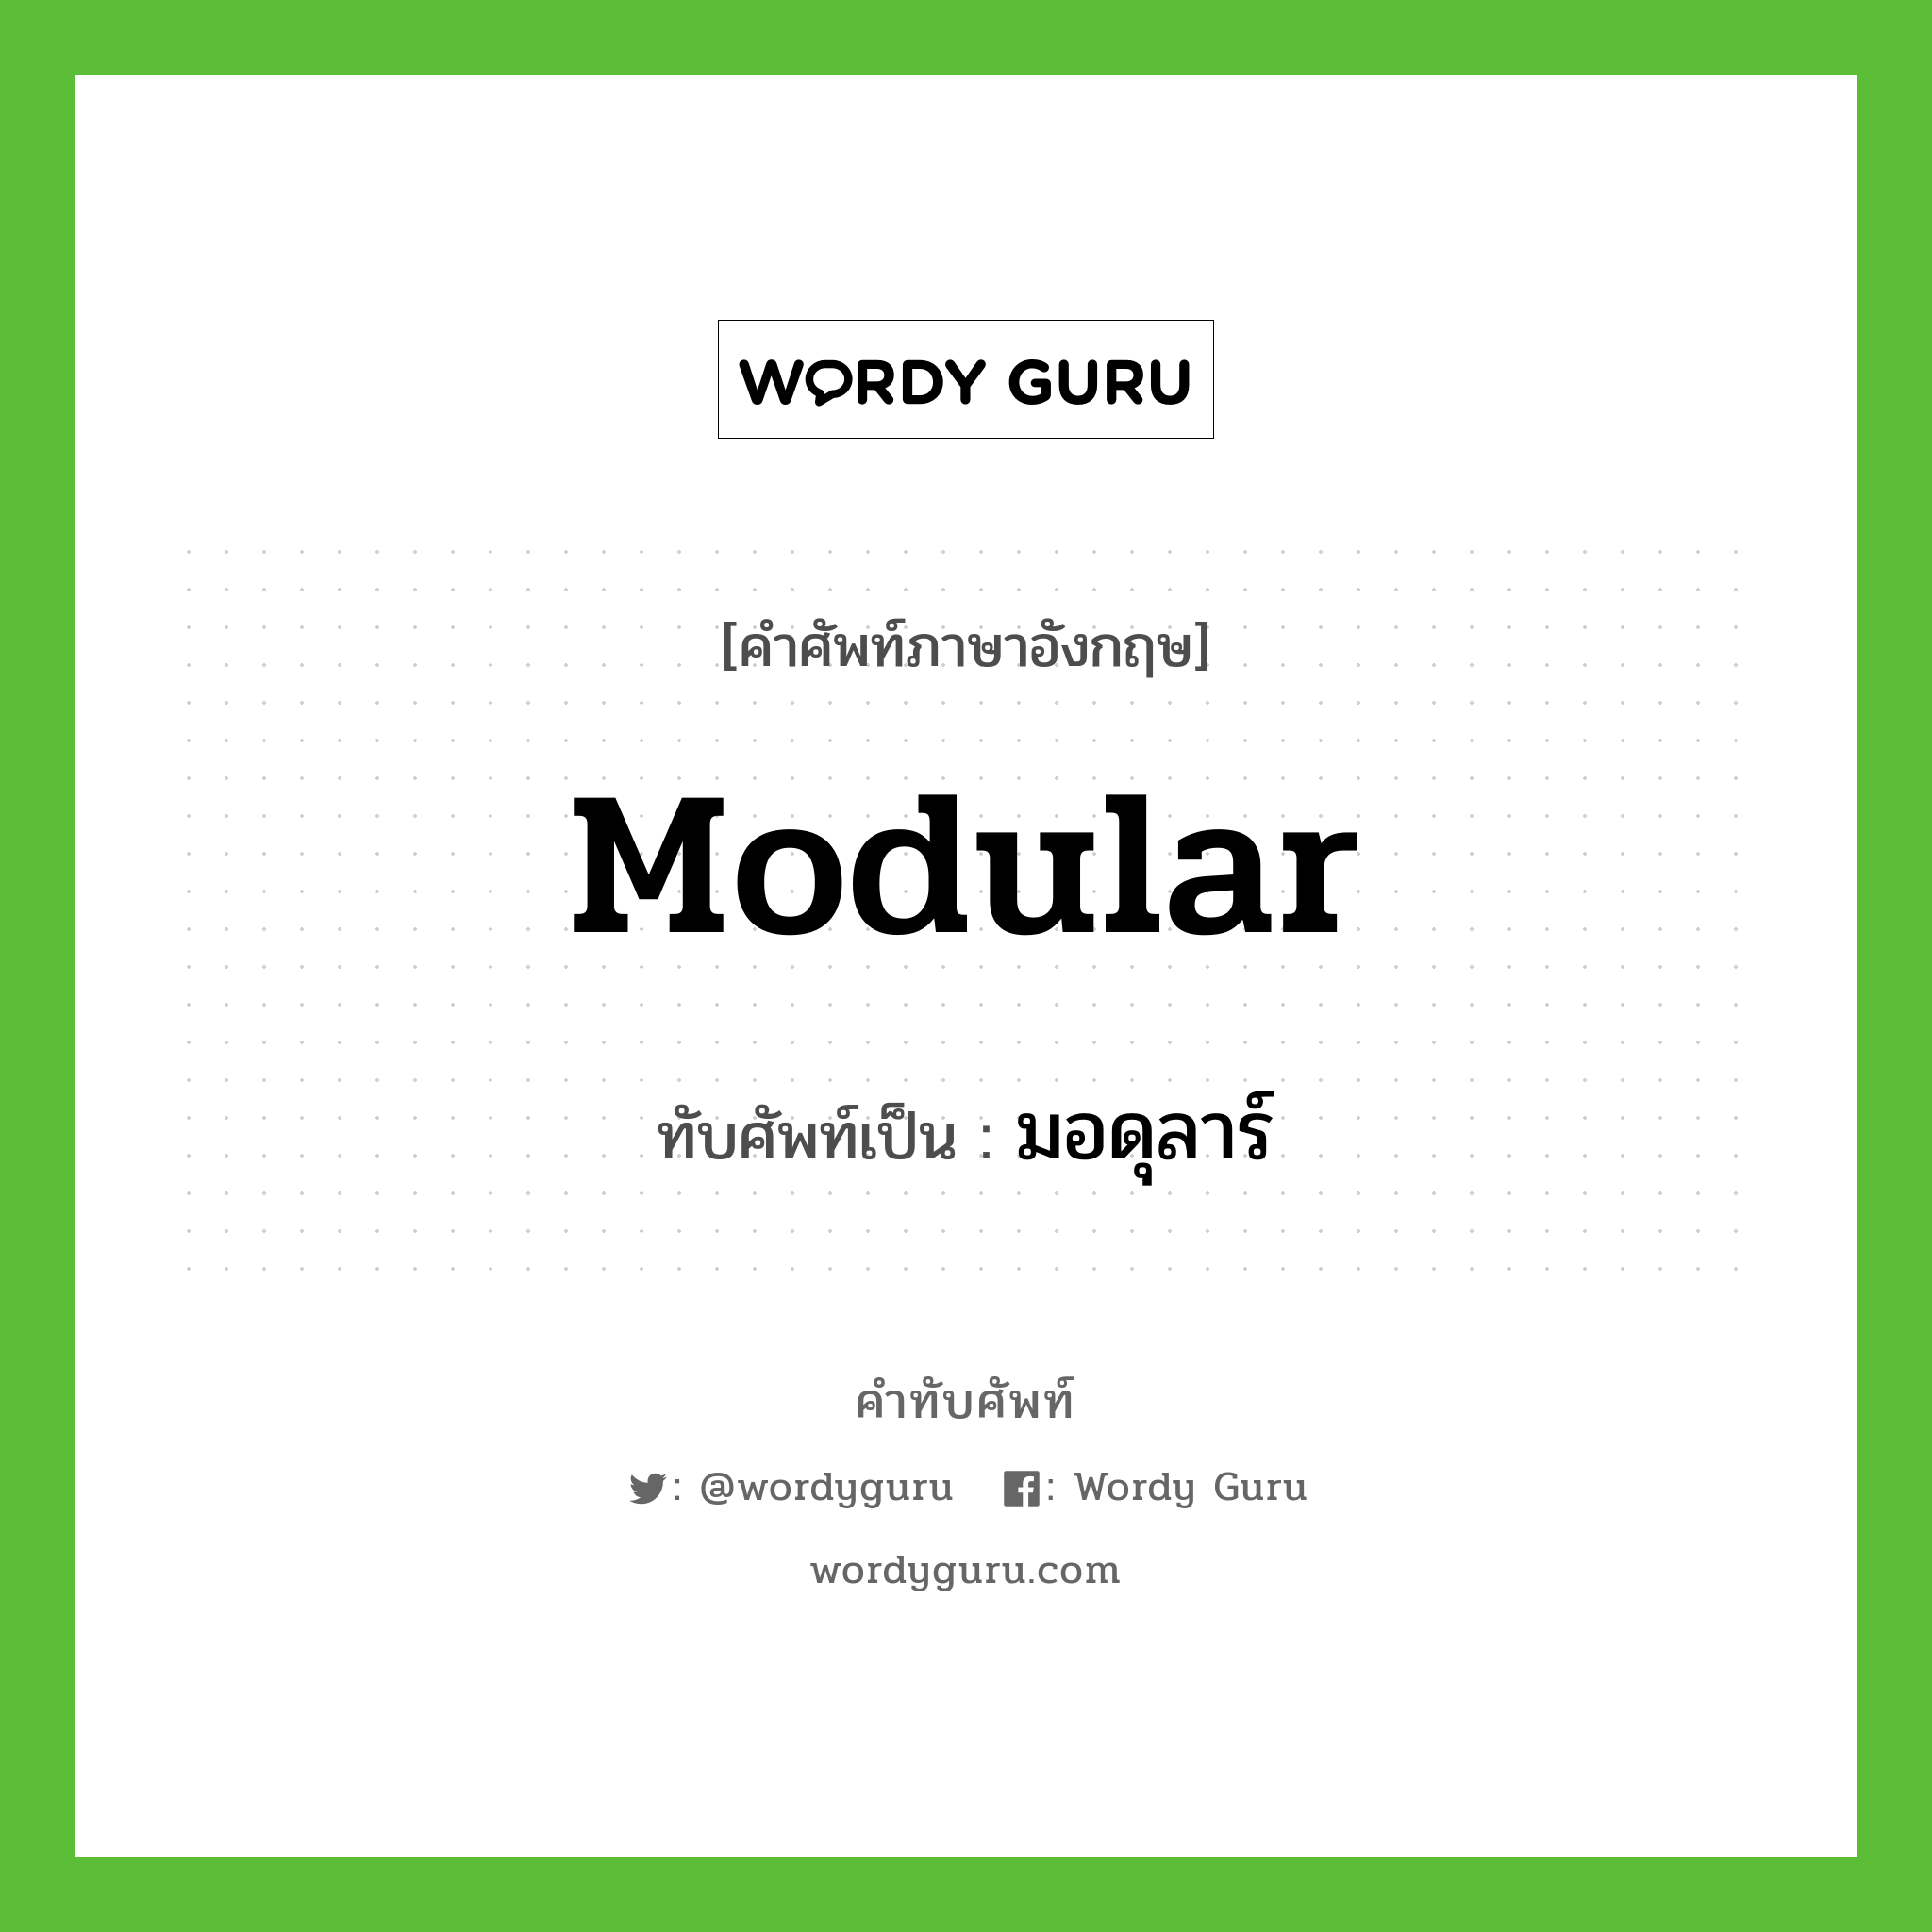 modular เขียนเป็นคำไทยว่าอะไร?, คำศัพท์ภาษาอังกฤษ modular ทับศัพท์เป็น มอดุลาร์